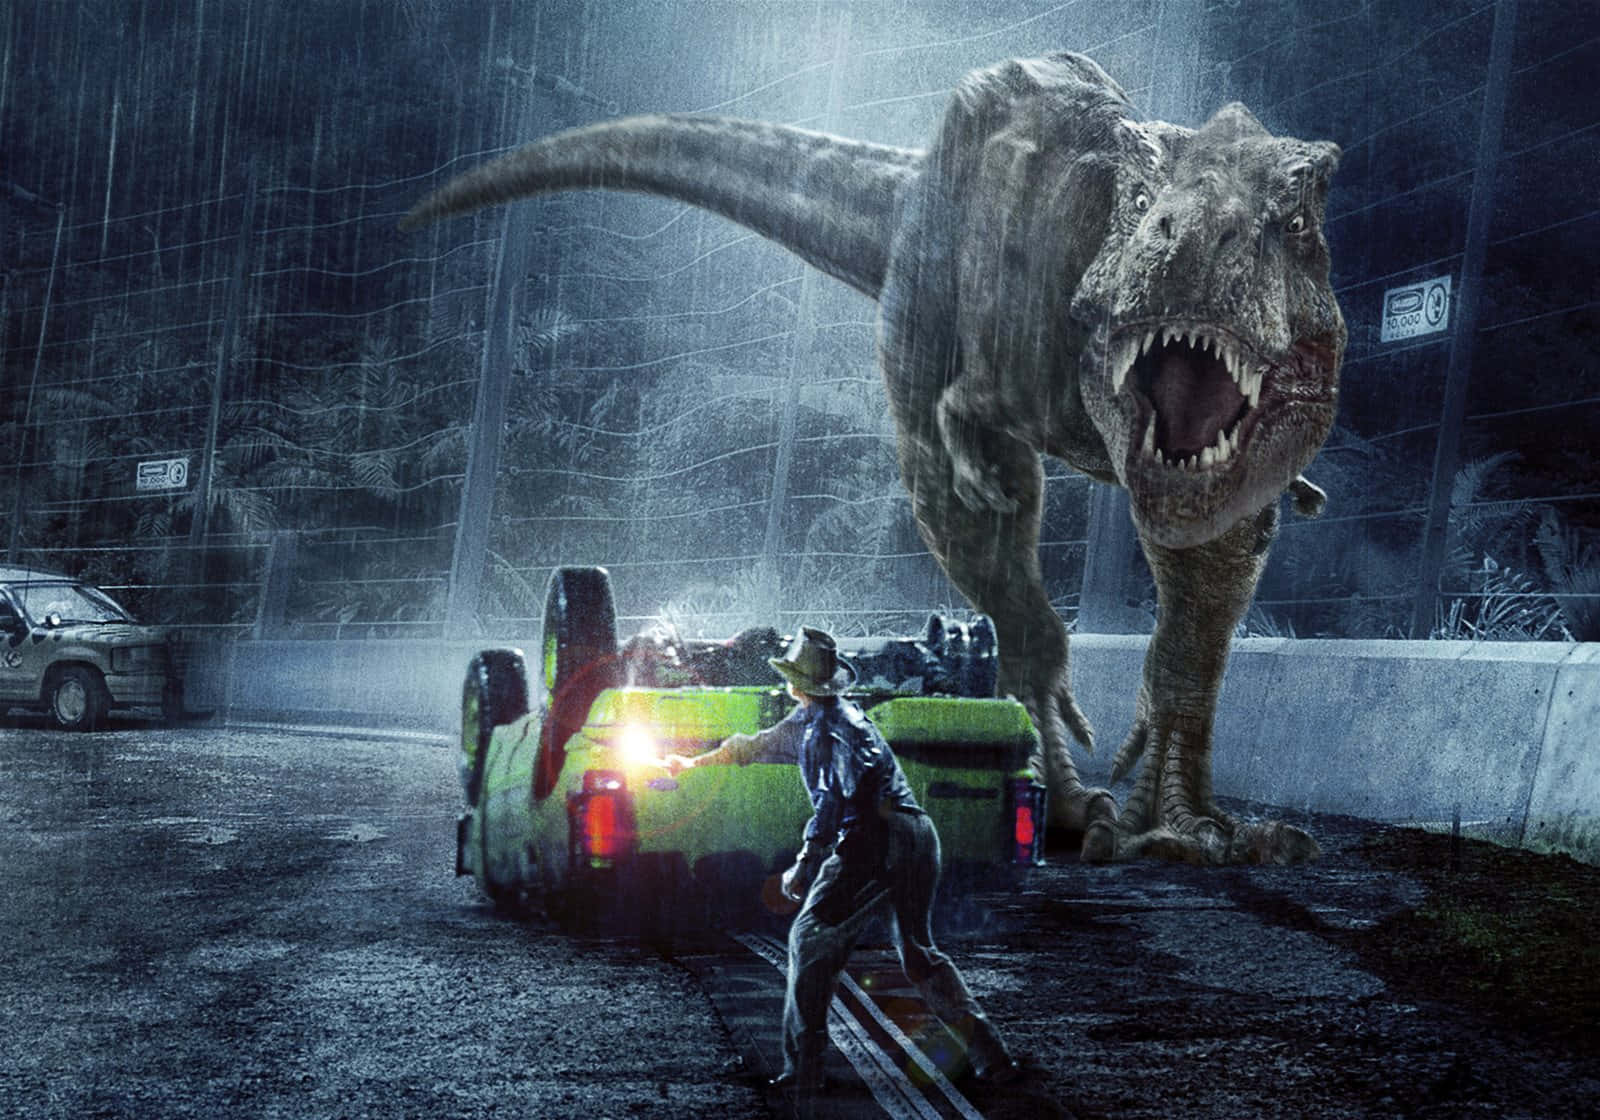 Wagedich Auf Eigene Gefahr In Den Jurassic Park Einzutreten